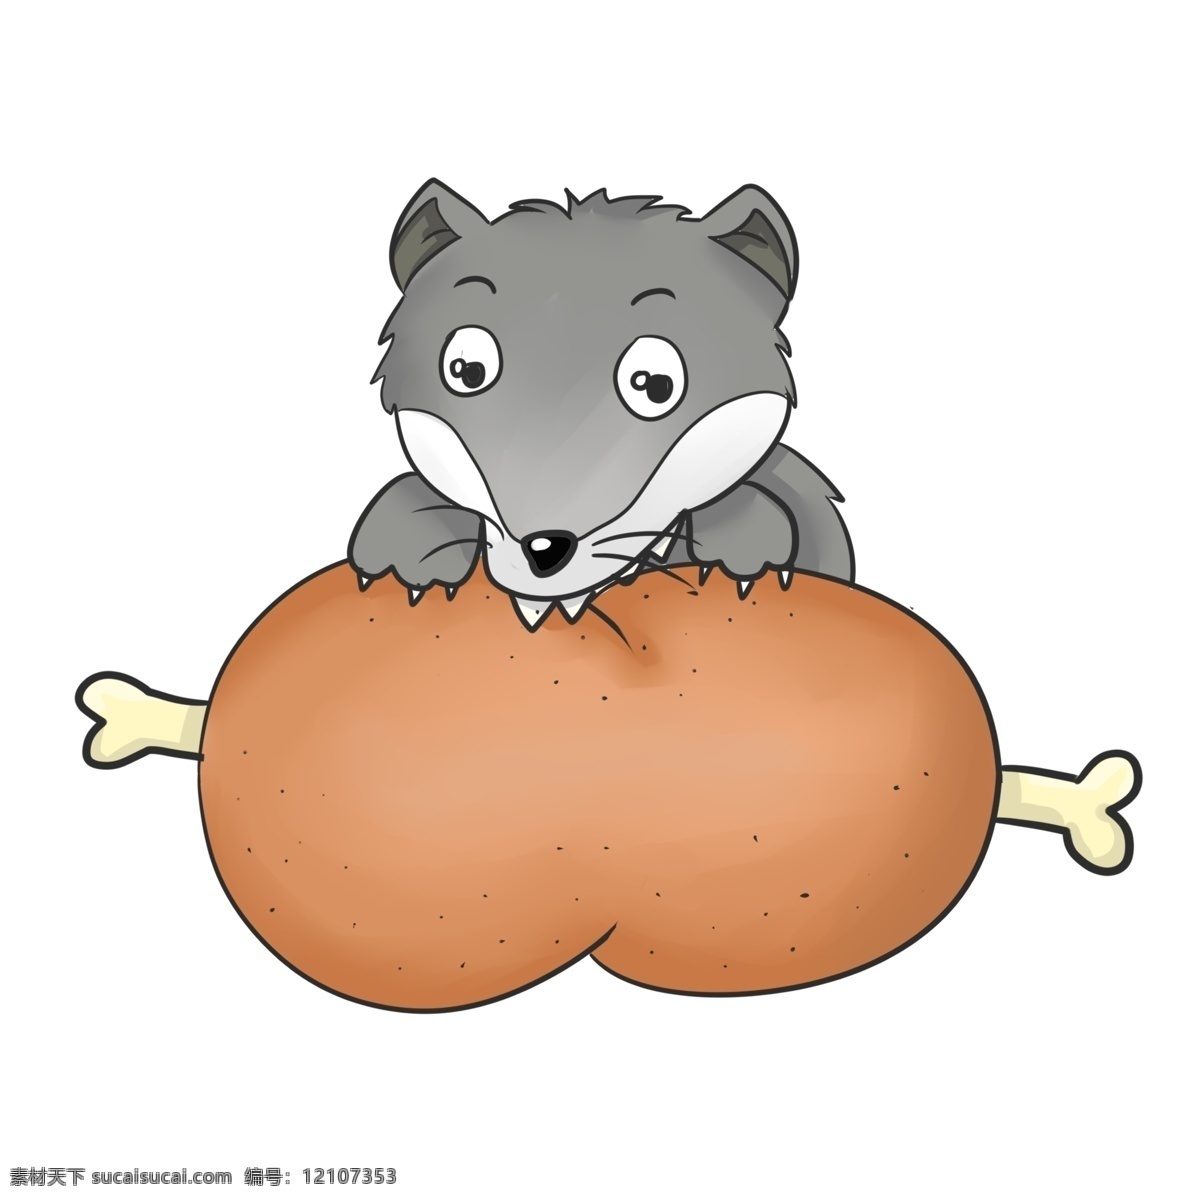 正在 啃 肉 狼 插画 一只狼 卡通狼 正在啃肉的狼 啃肉的狼 鸡腿 一个大鸡腿 狼吃肉插图